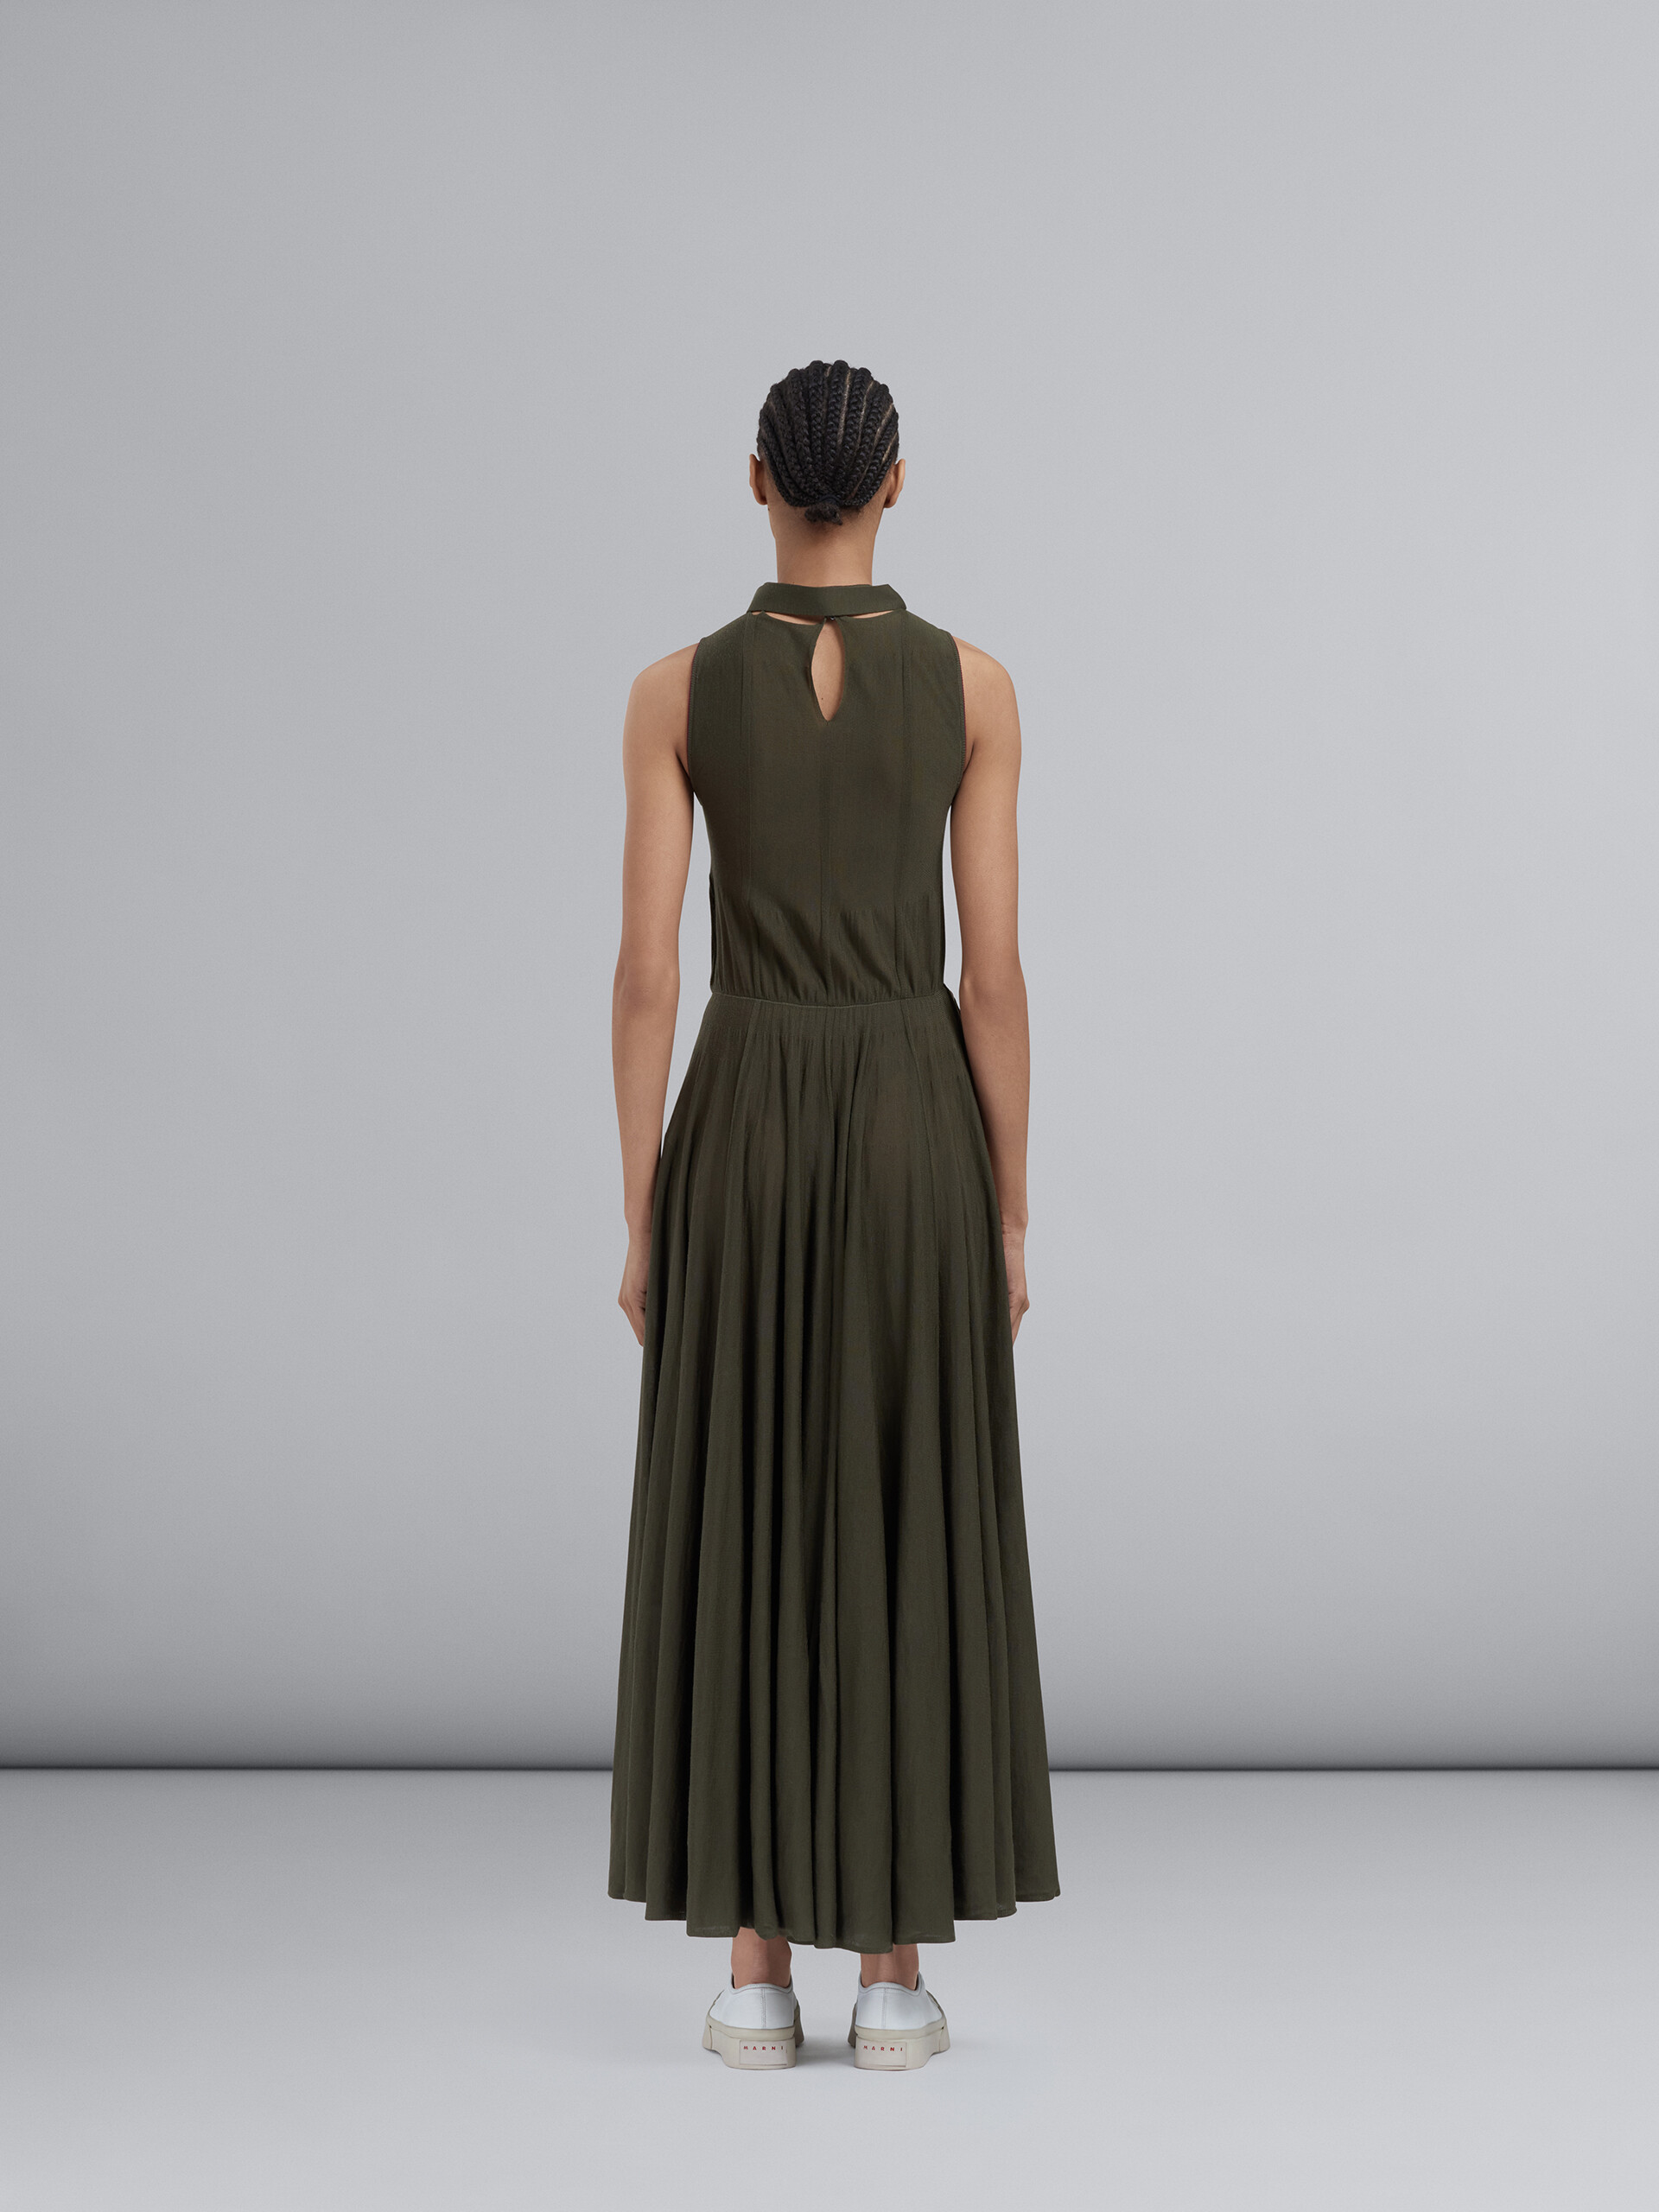 シックなライトウールドレス - ドレス - Image 3